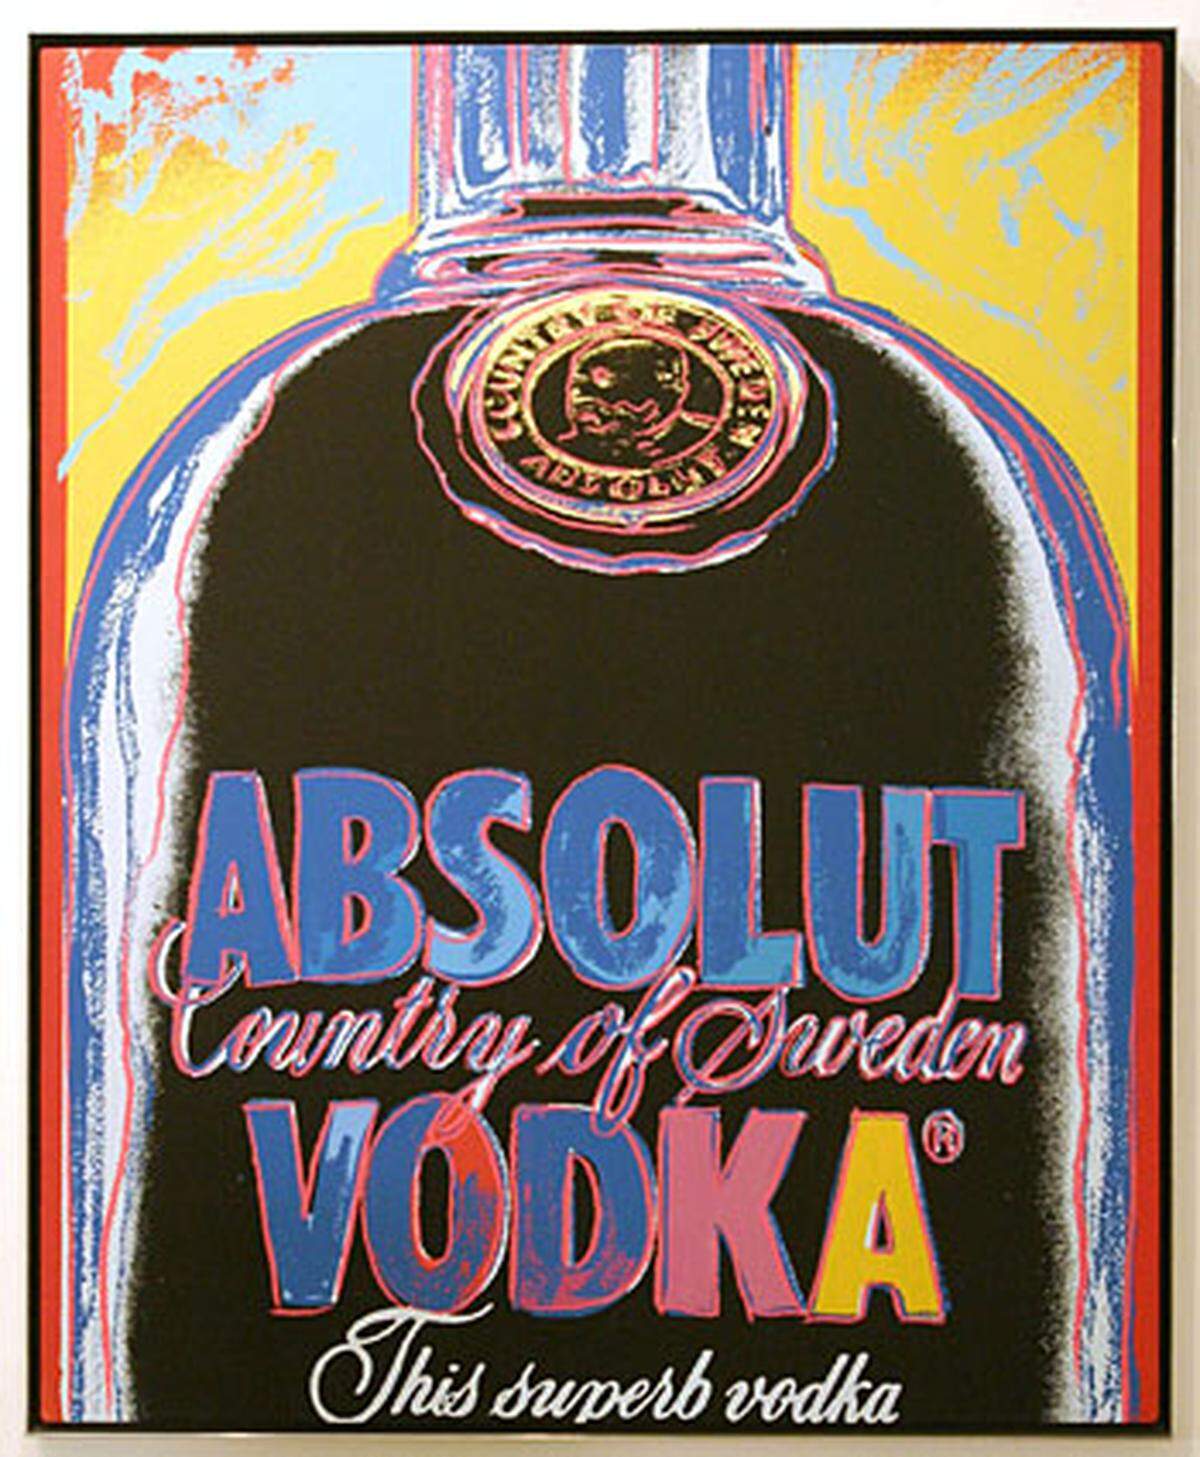 Der Wodka soll farblos, klar, funkelnd, ohne Fremdpartikel und Bodensatz sein. Wer sich nicht sicher ist, kann das "Wässerchen" mit destiliertem Wasser vergleichen, im Gegenlicht sollte kein Unterschied zu sehen sein. Andy Warhol's Absolut Wodka